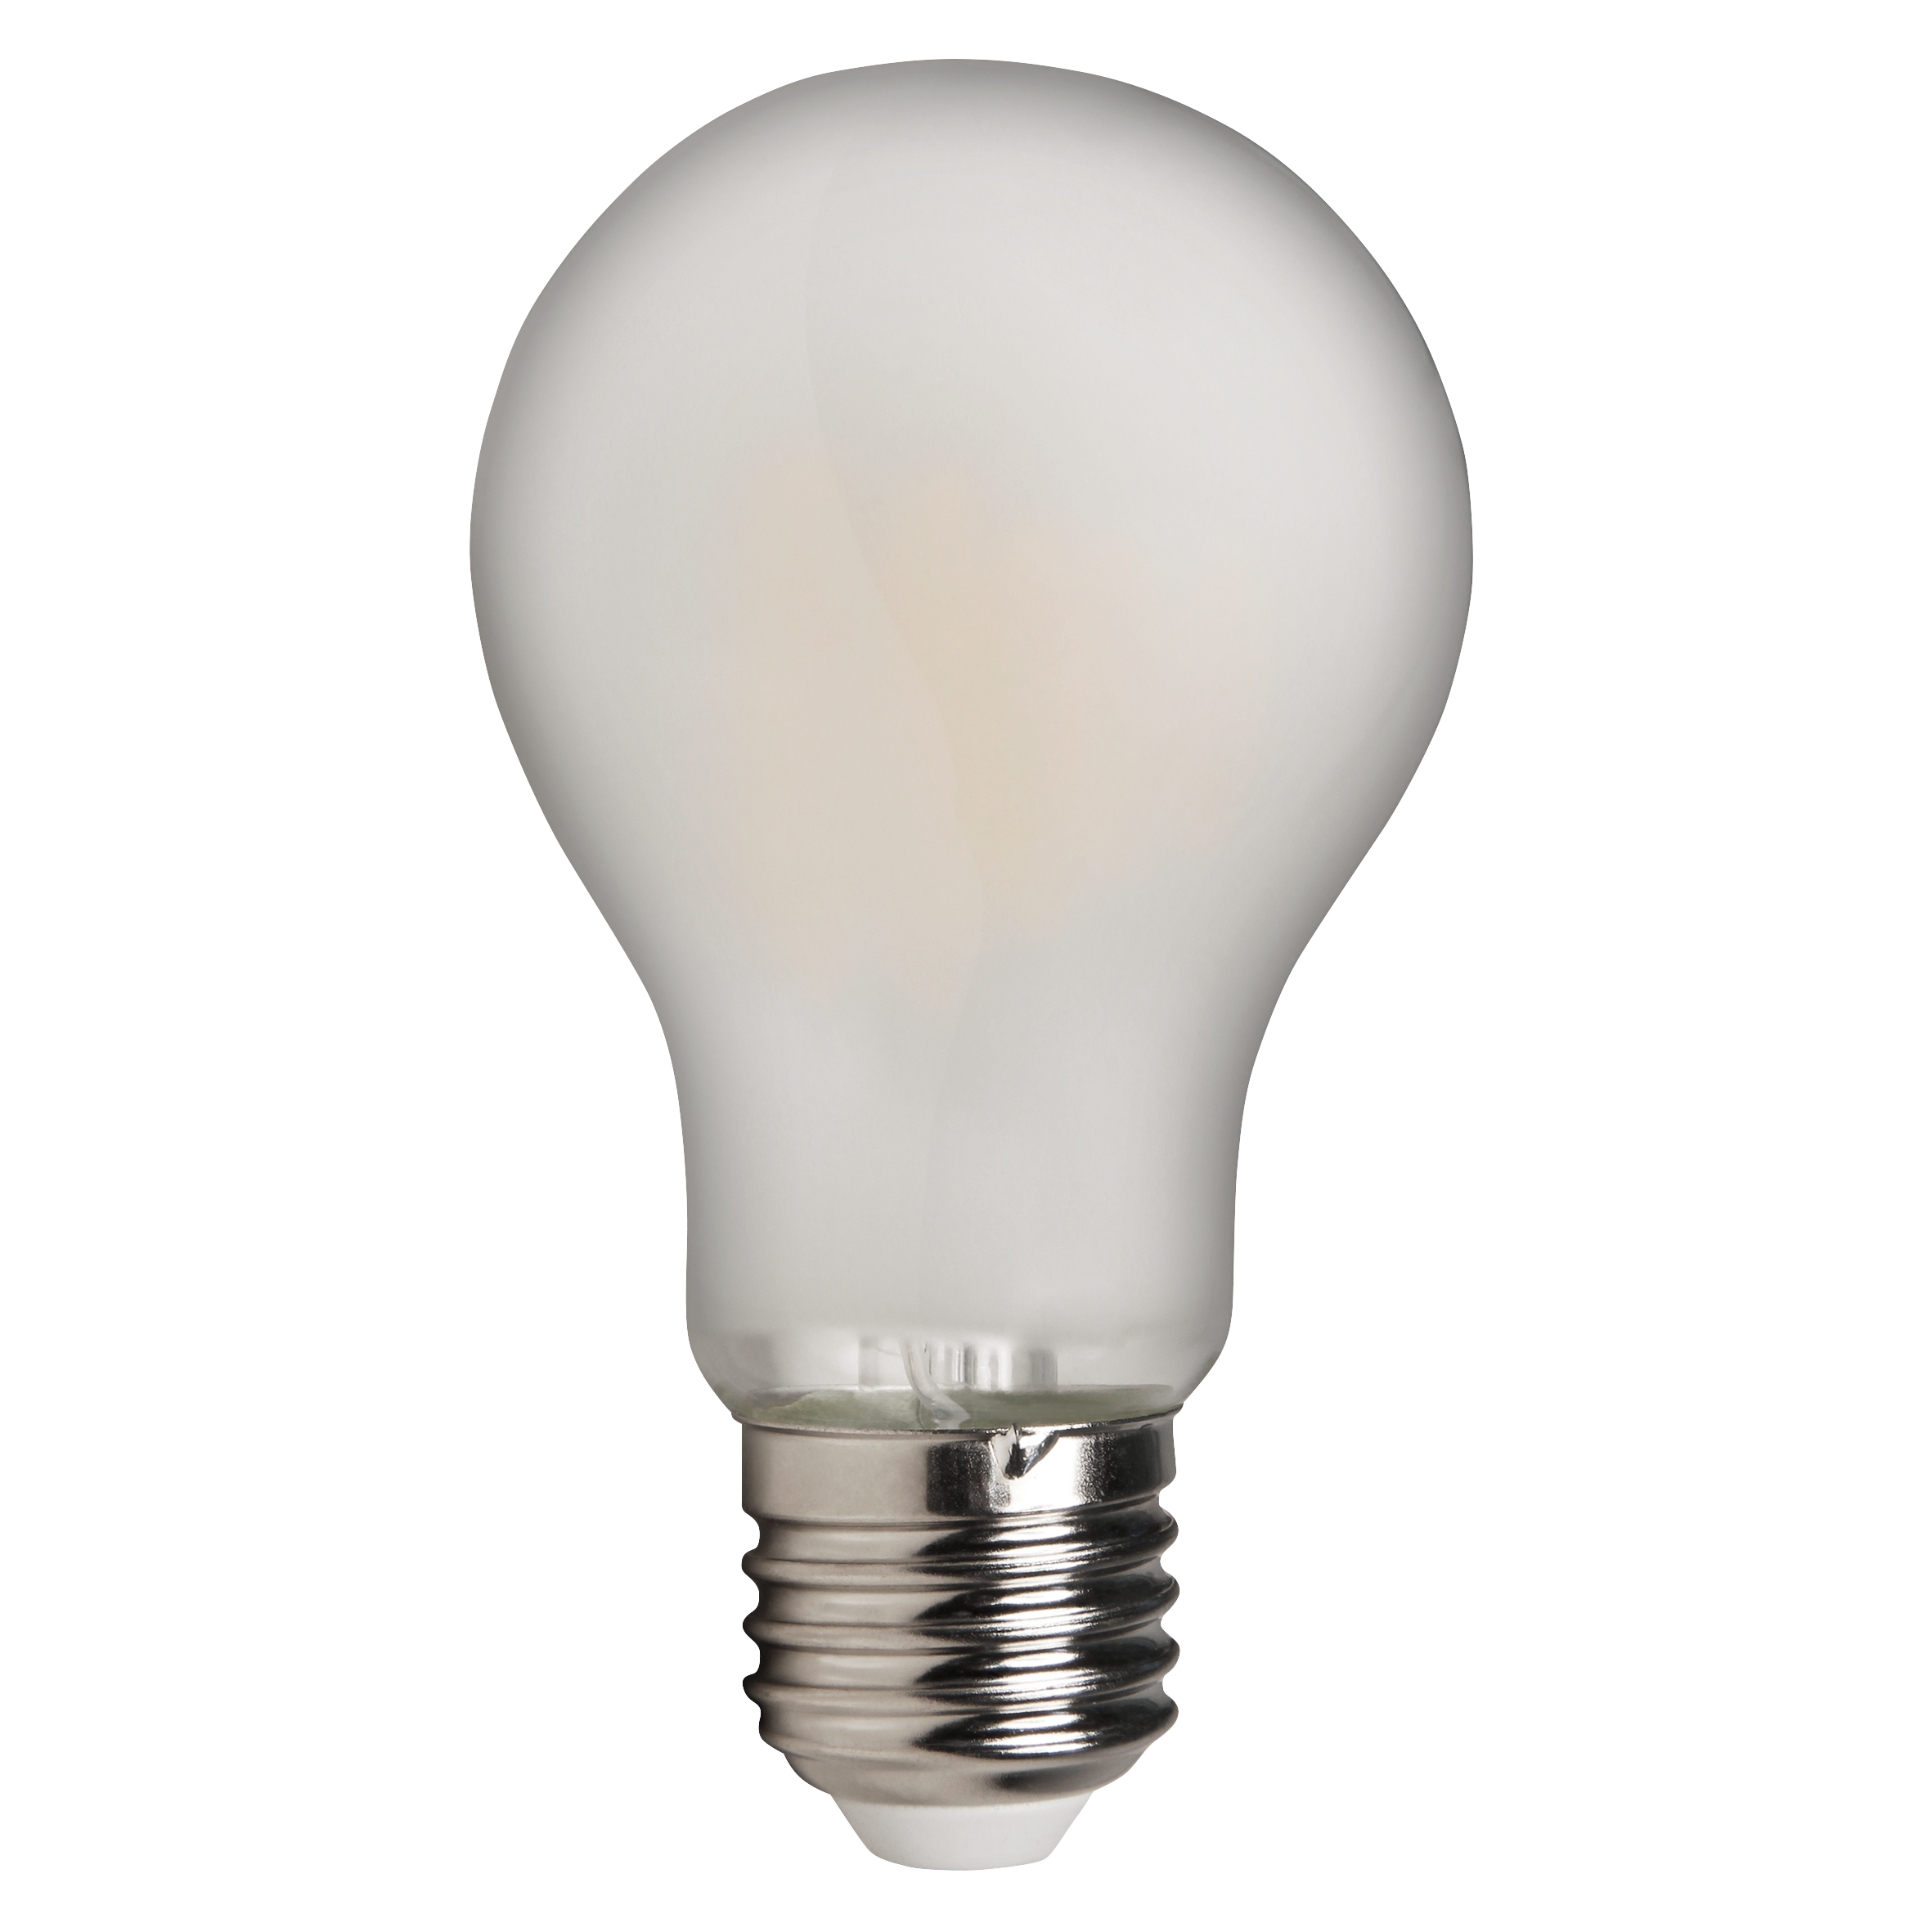 LED Filament Glhlampe McShine "Filed", E27, 4W, 490 lm, warmwei, matt